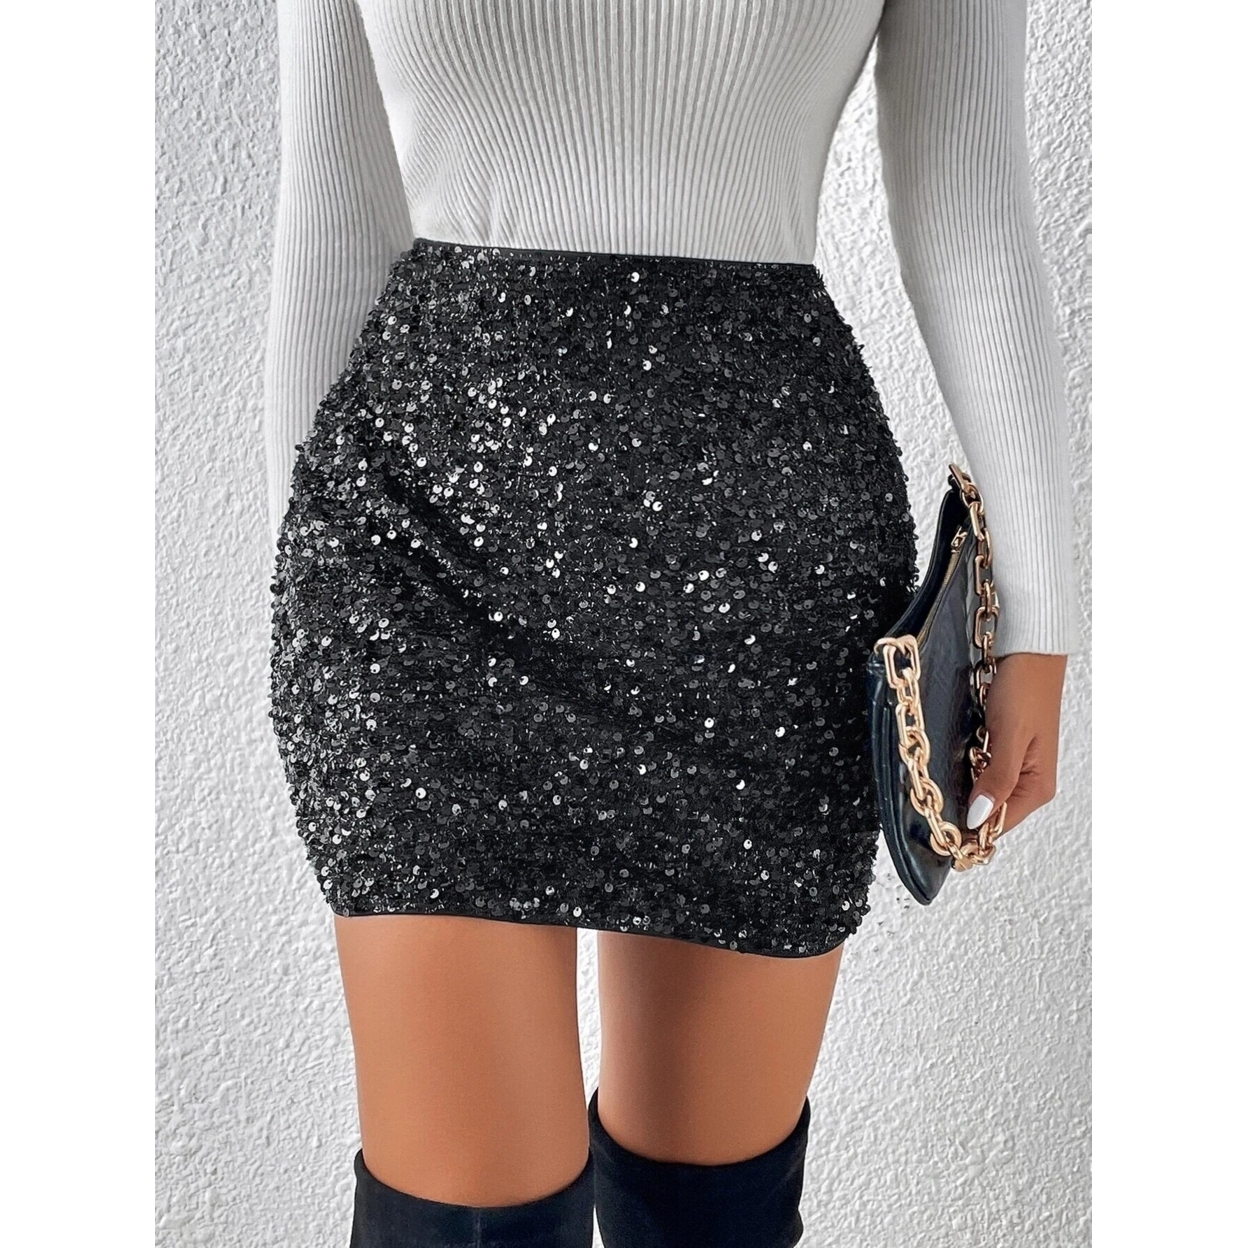 High Waist Sequin Bodycon Skirt - Black, X-Small